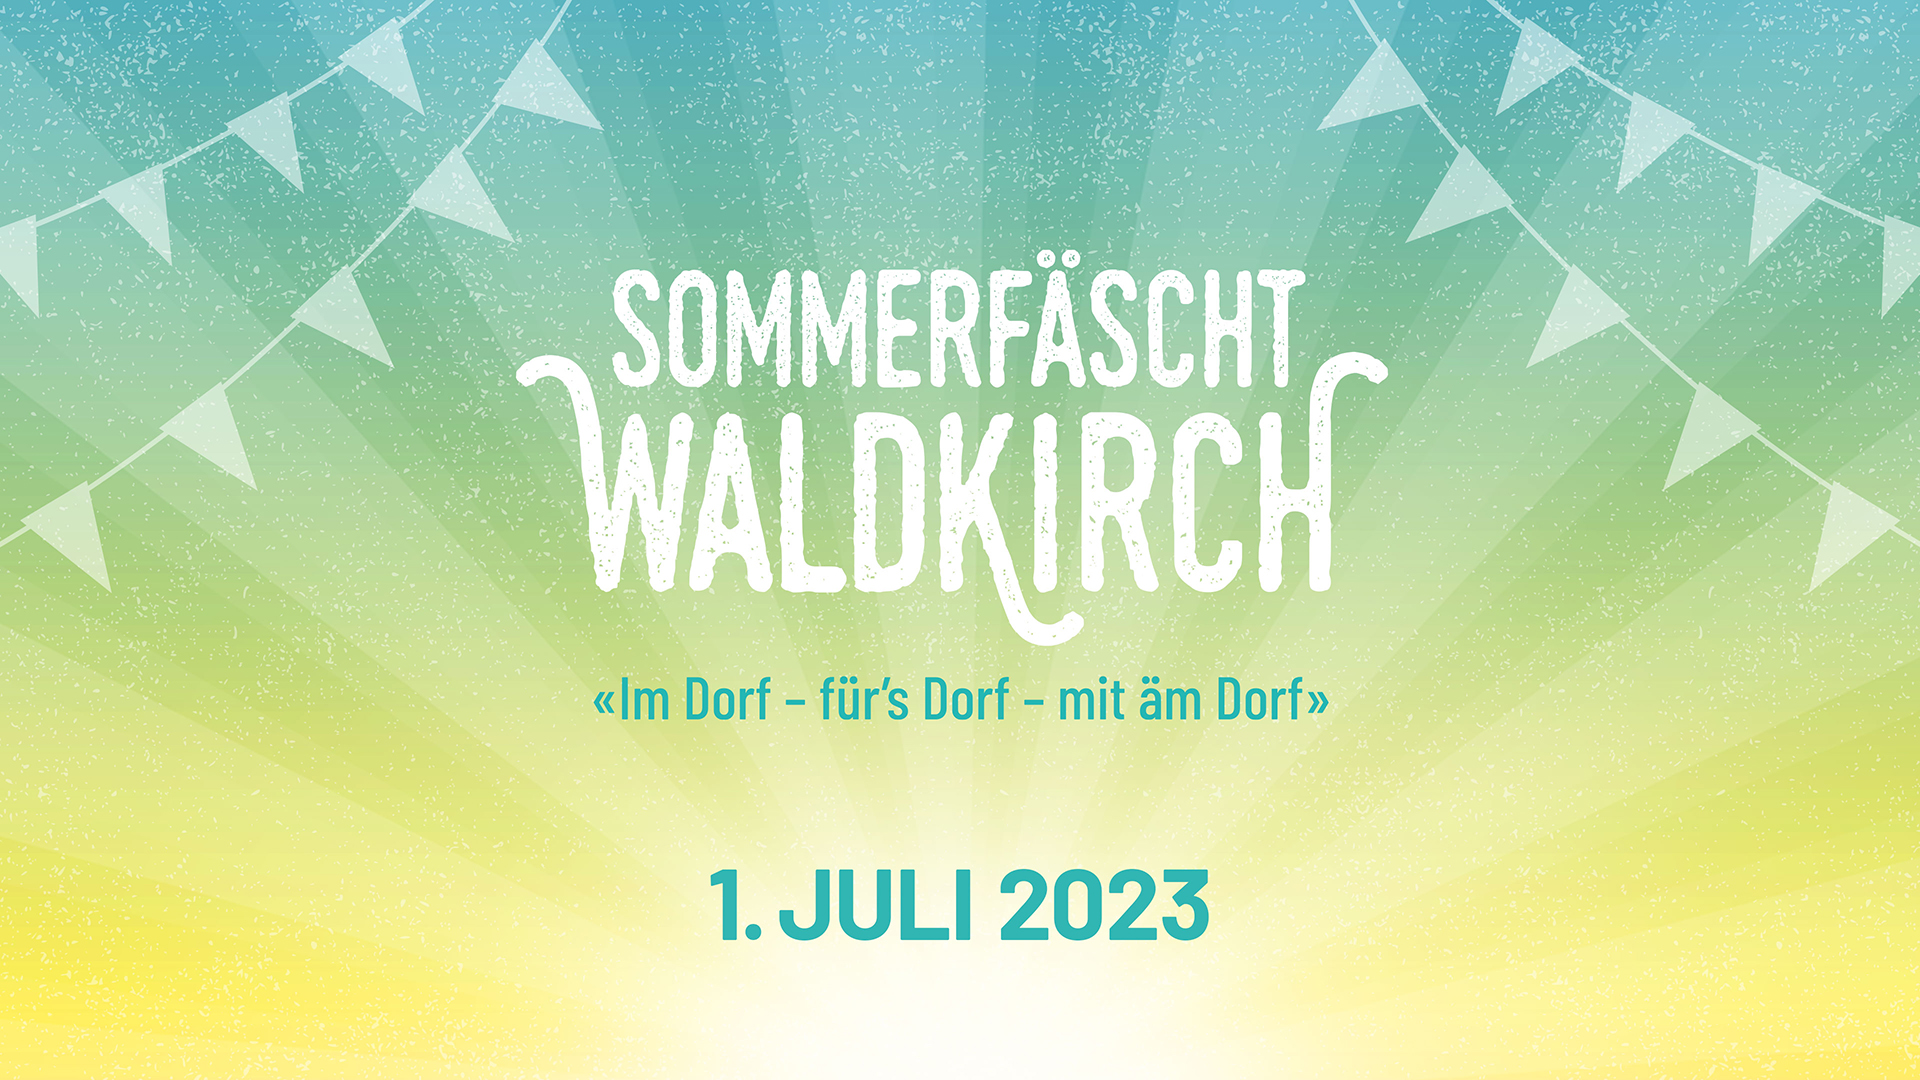 (c) Sommerfaescht.ch